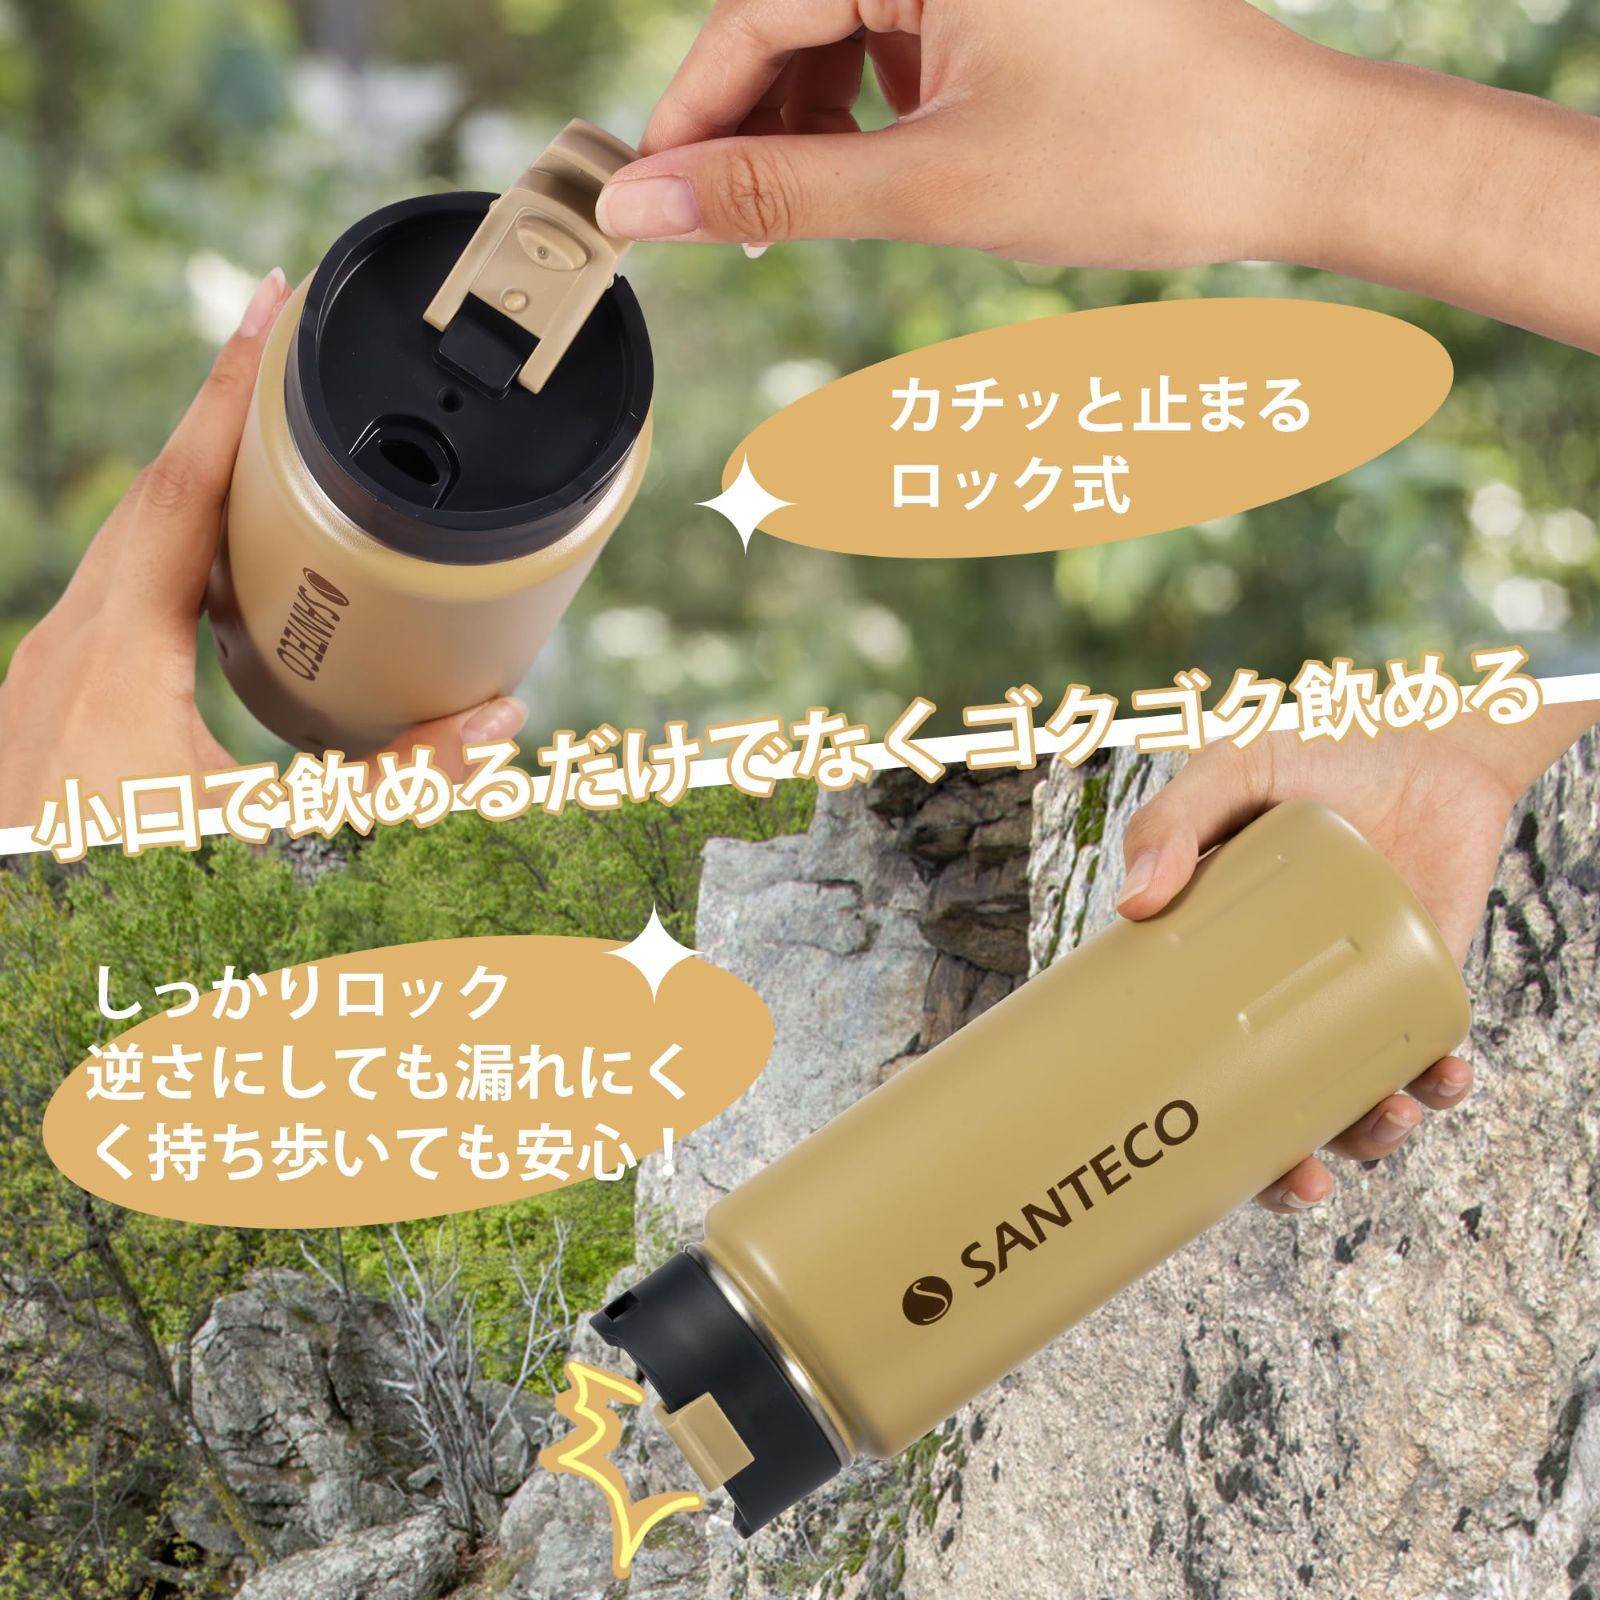 【色: カーキ】SANTECO 水筒 710ml 大容量 直飲み 真空断熱 魔法